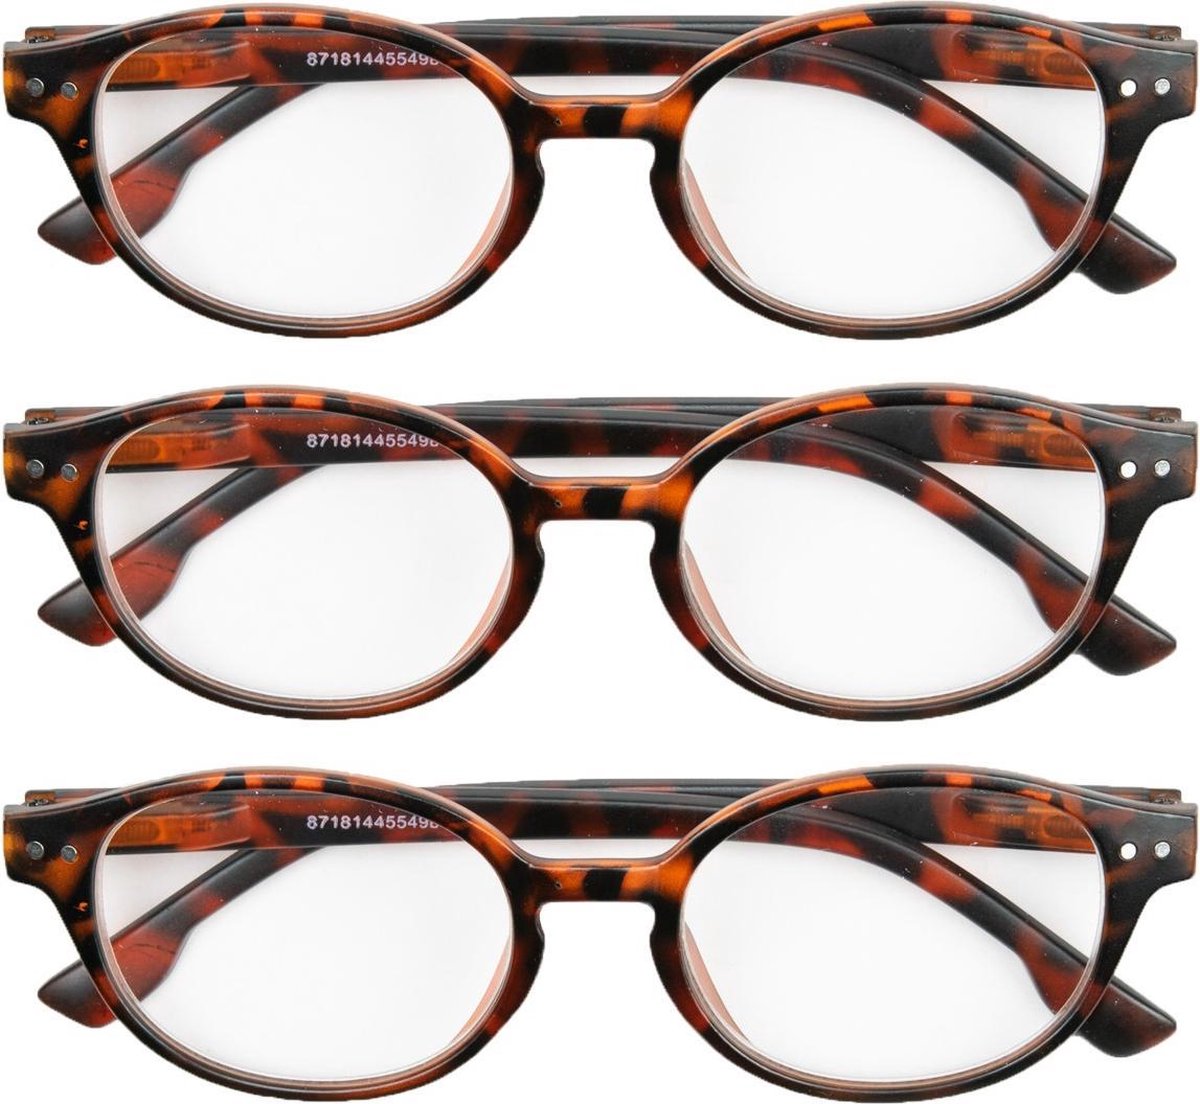 Leesbril mat havanna rond +1,00 - 3 stuks - leesbrillen bruin